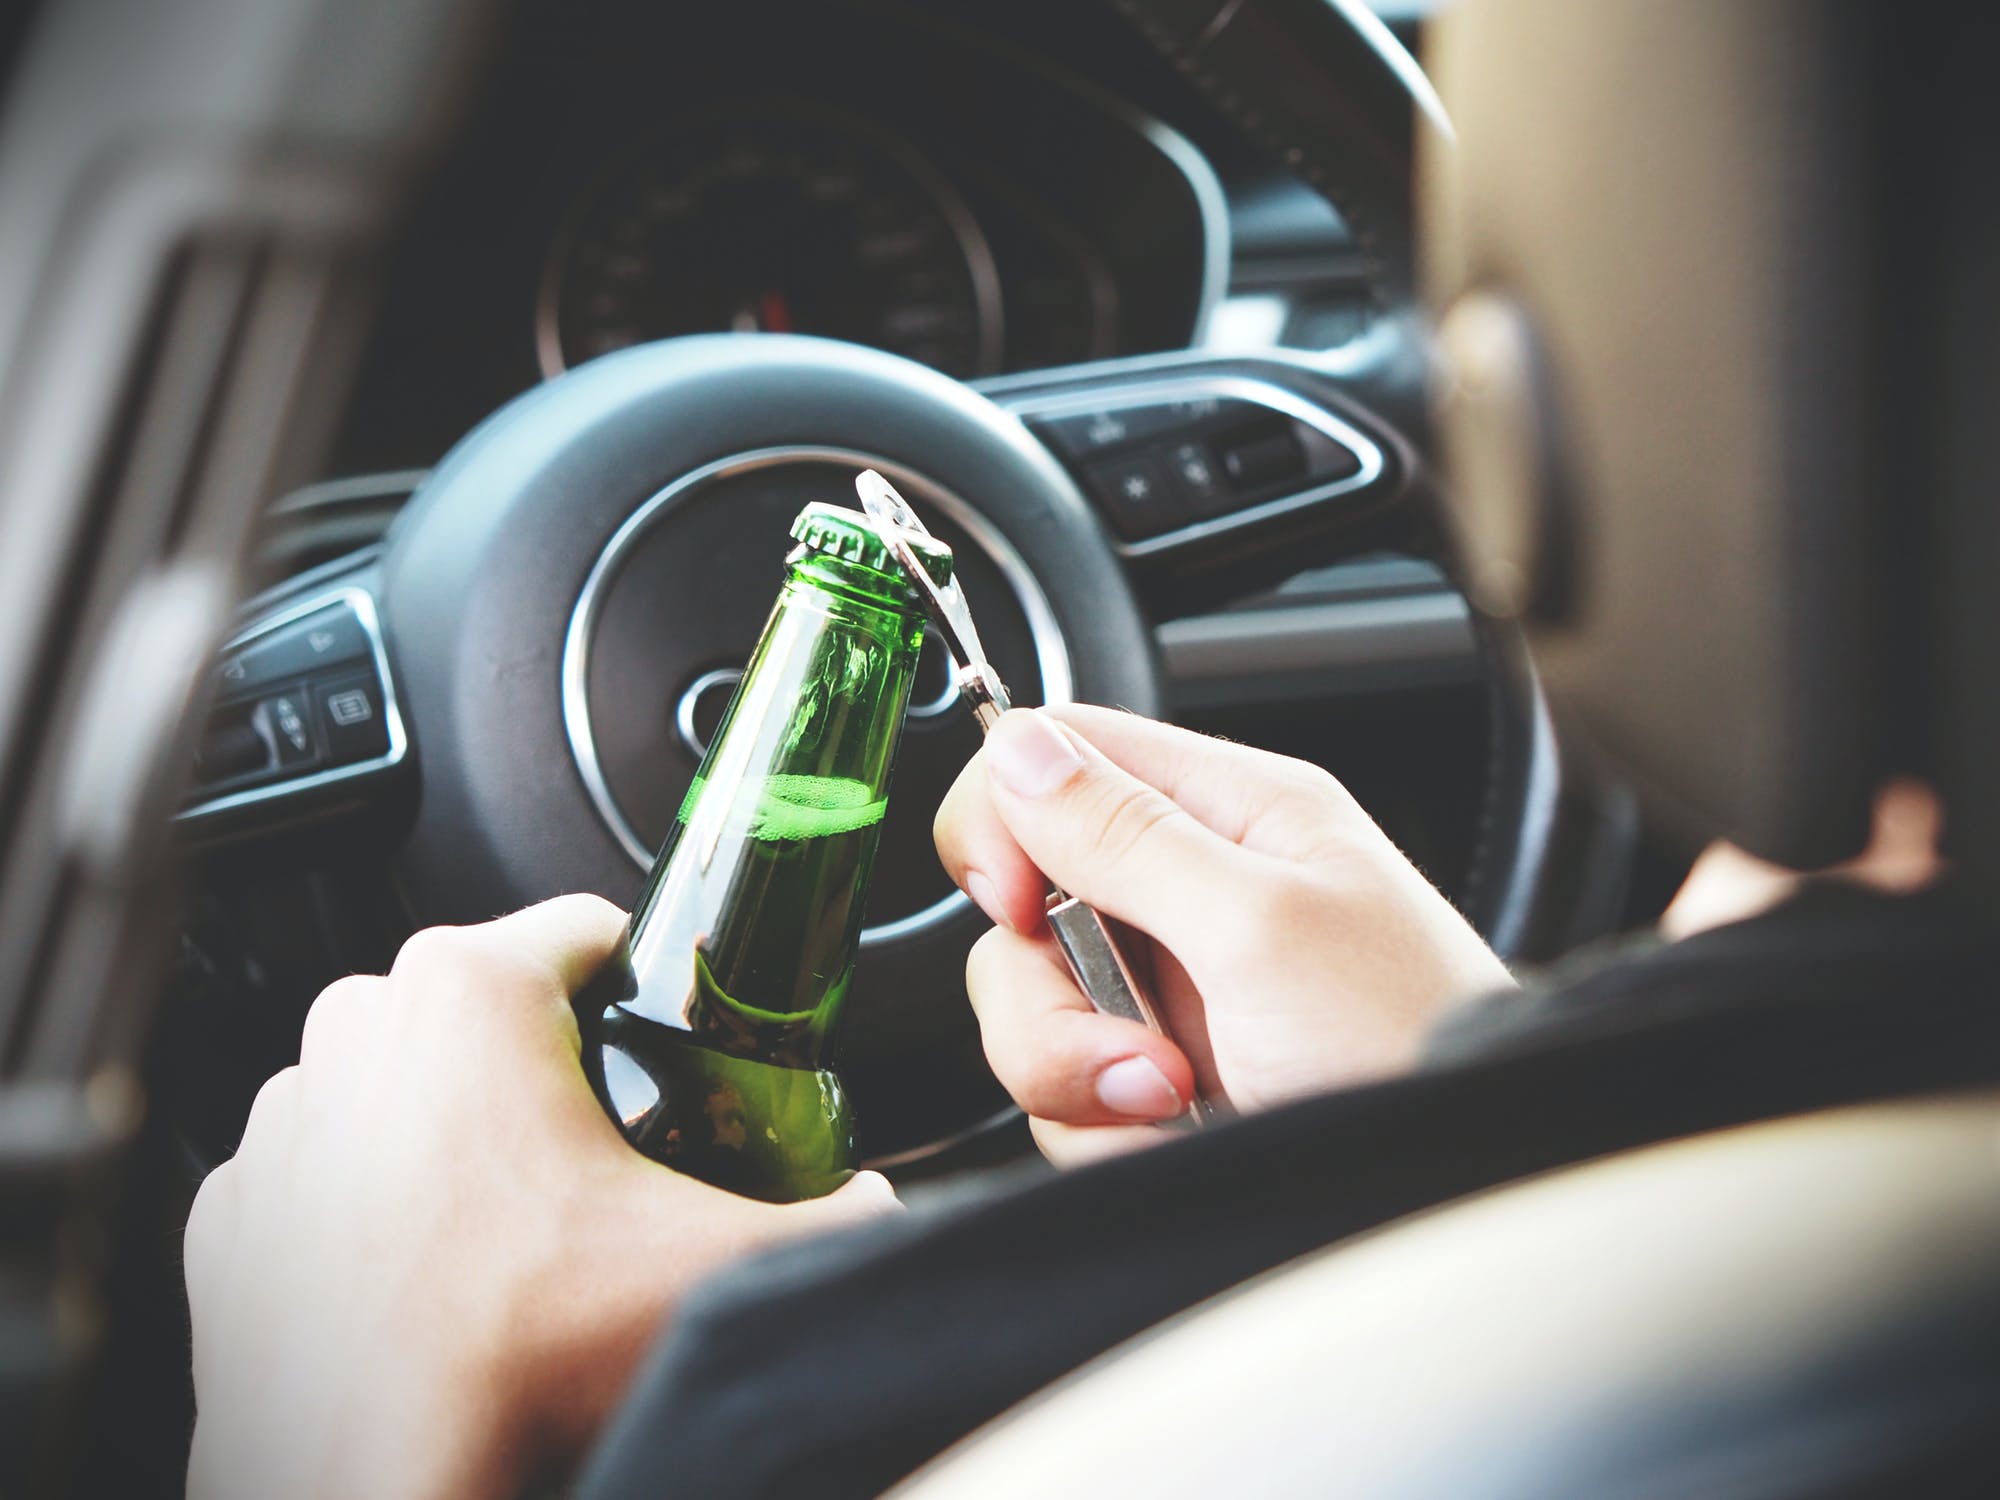 Blokada alkoholowa do auta - jak działa?